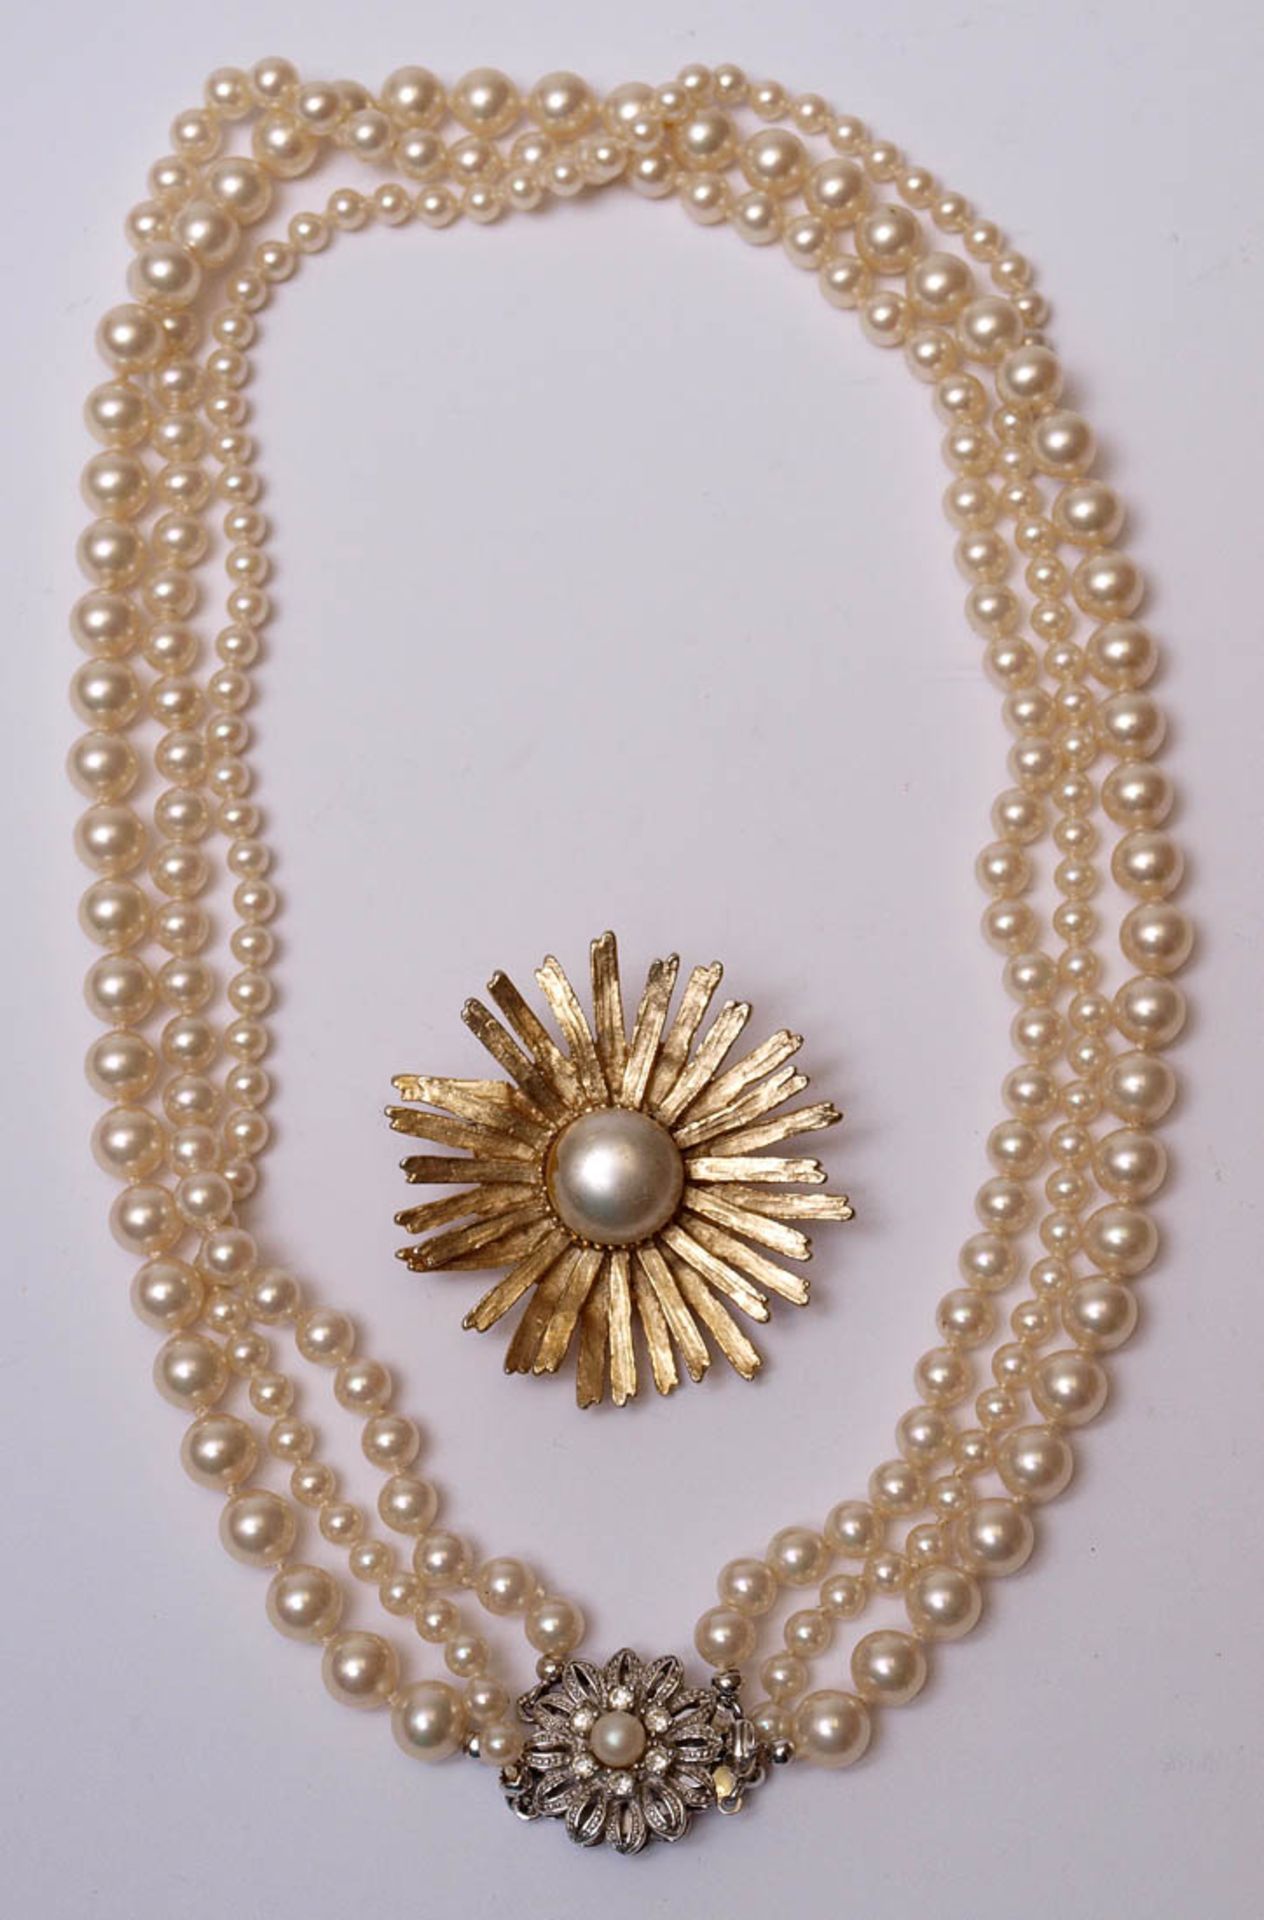 KonvolutDreireihige Zuchtperlkette mit Perlen von unterschiedlichem Durchmesser. Blütenförmiges - Bild 2 aus 2